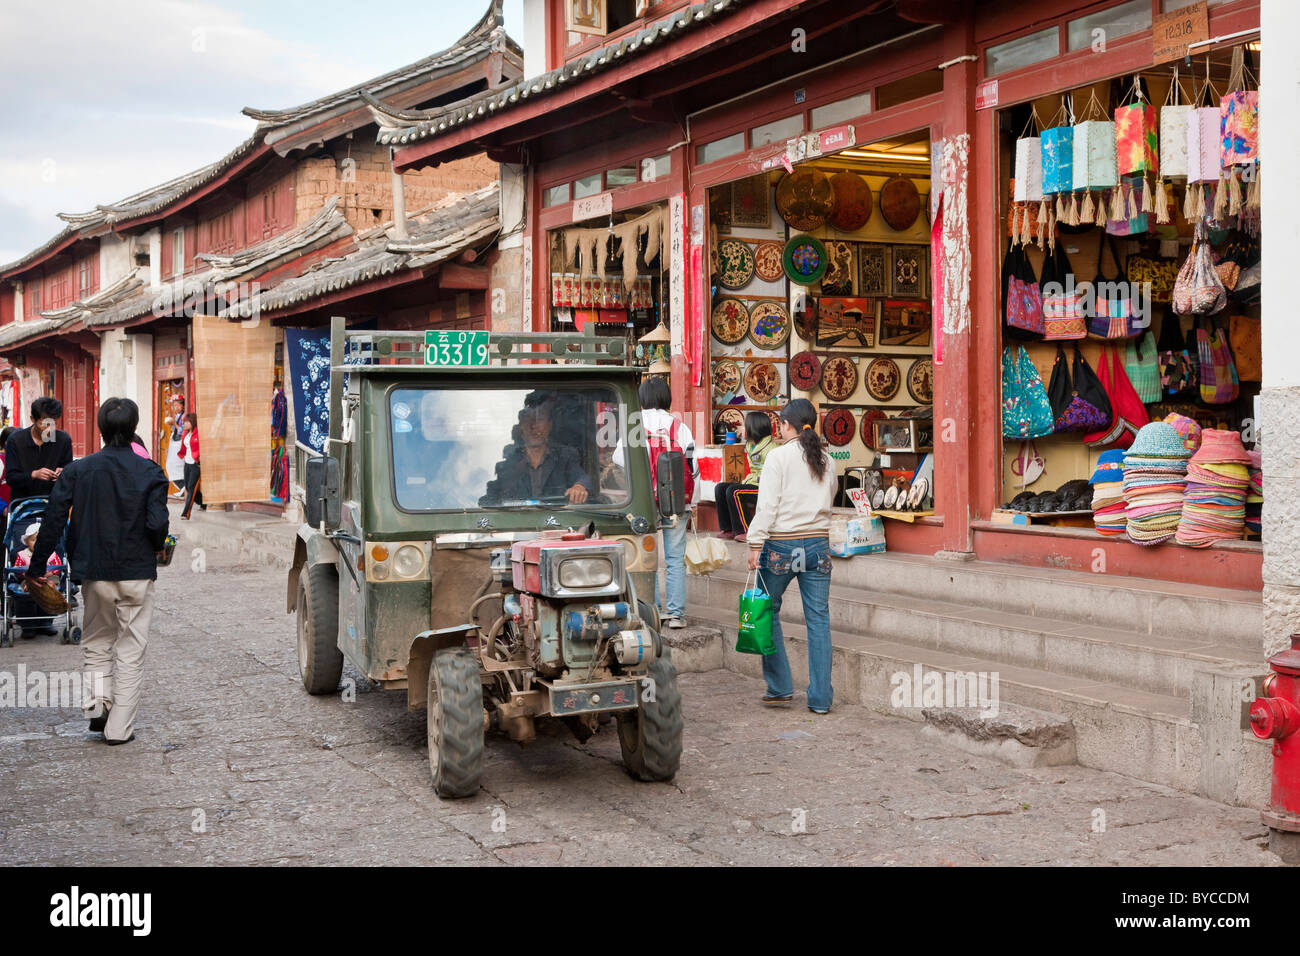 Un tuk-tuk, Riscio' o auto rickshaw in uno stretto vicolo lastricato a Lijiang old town, nella provincia dello Yunnan in Cina. JMH4757 Foto Stock